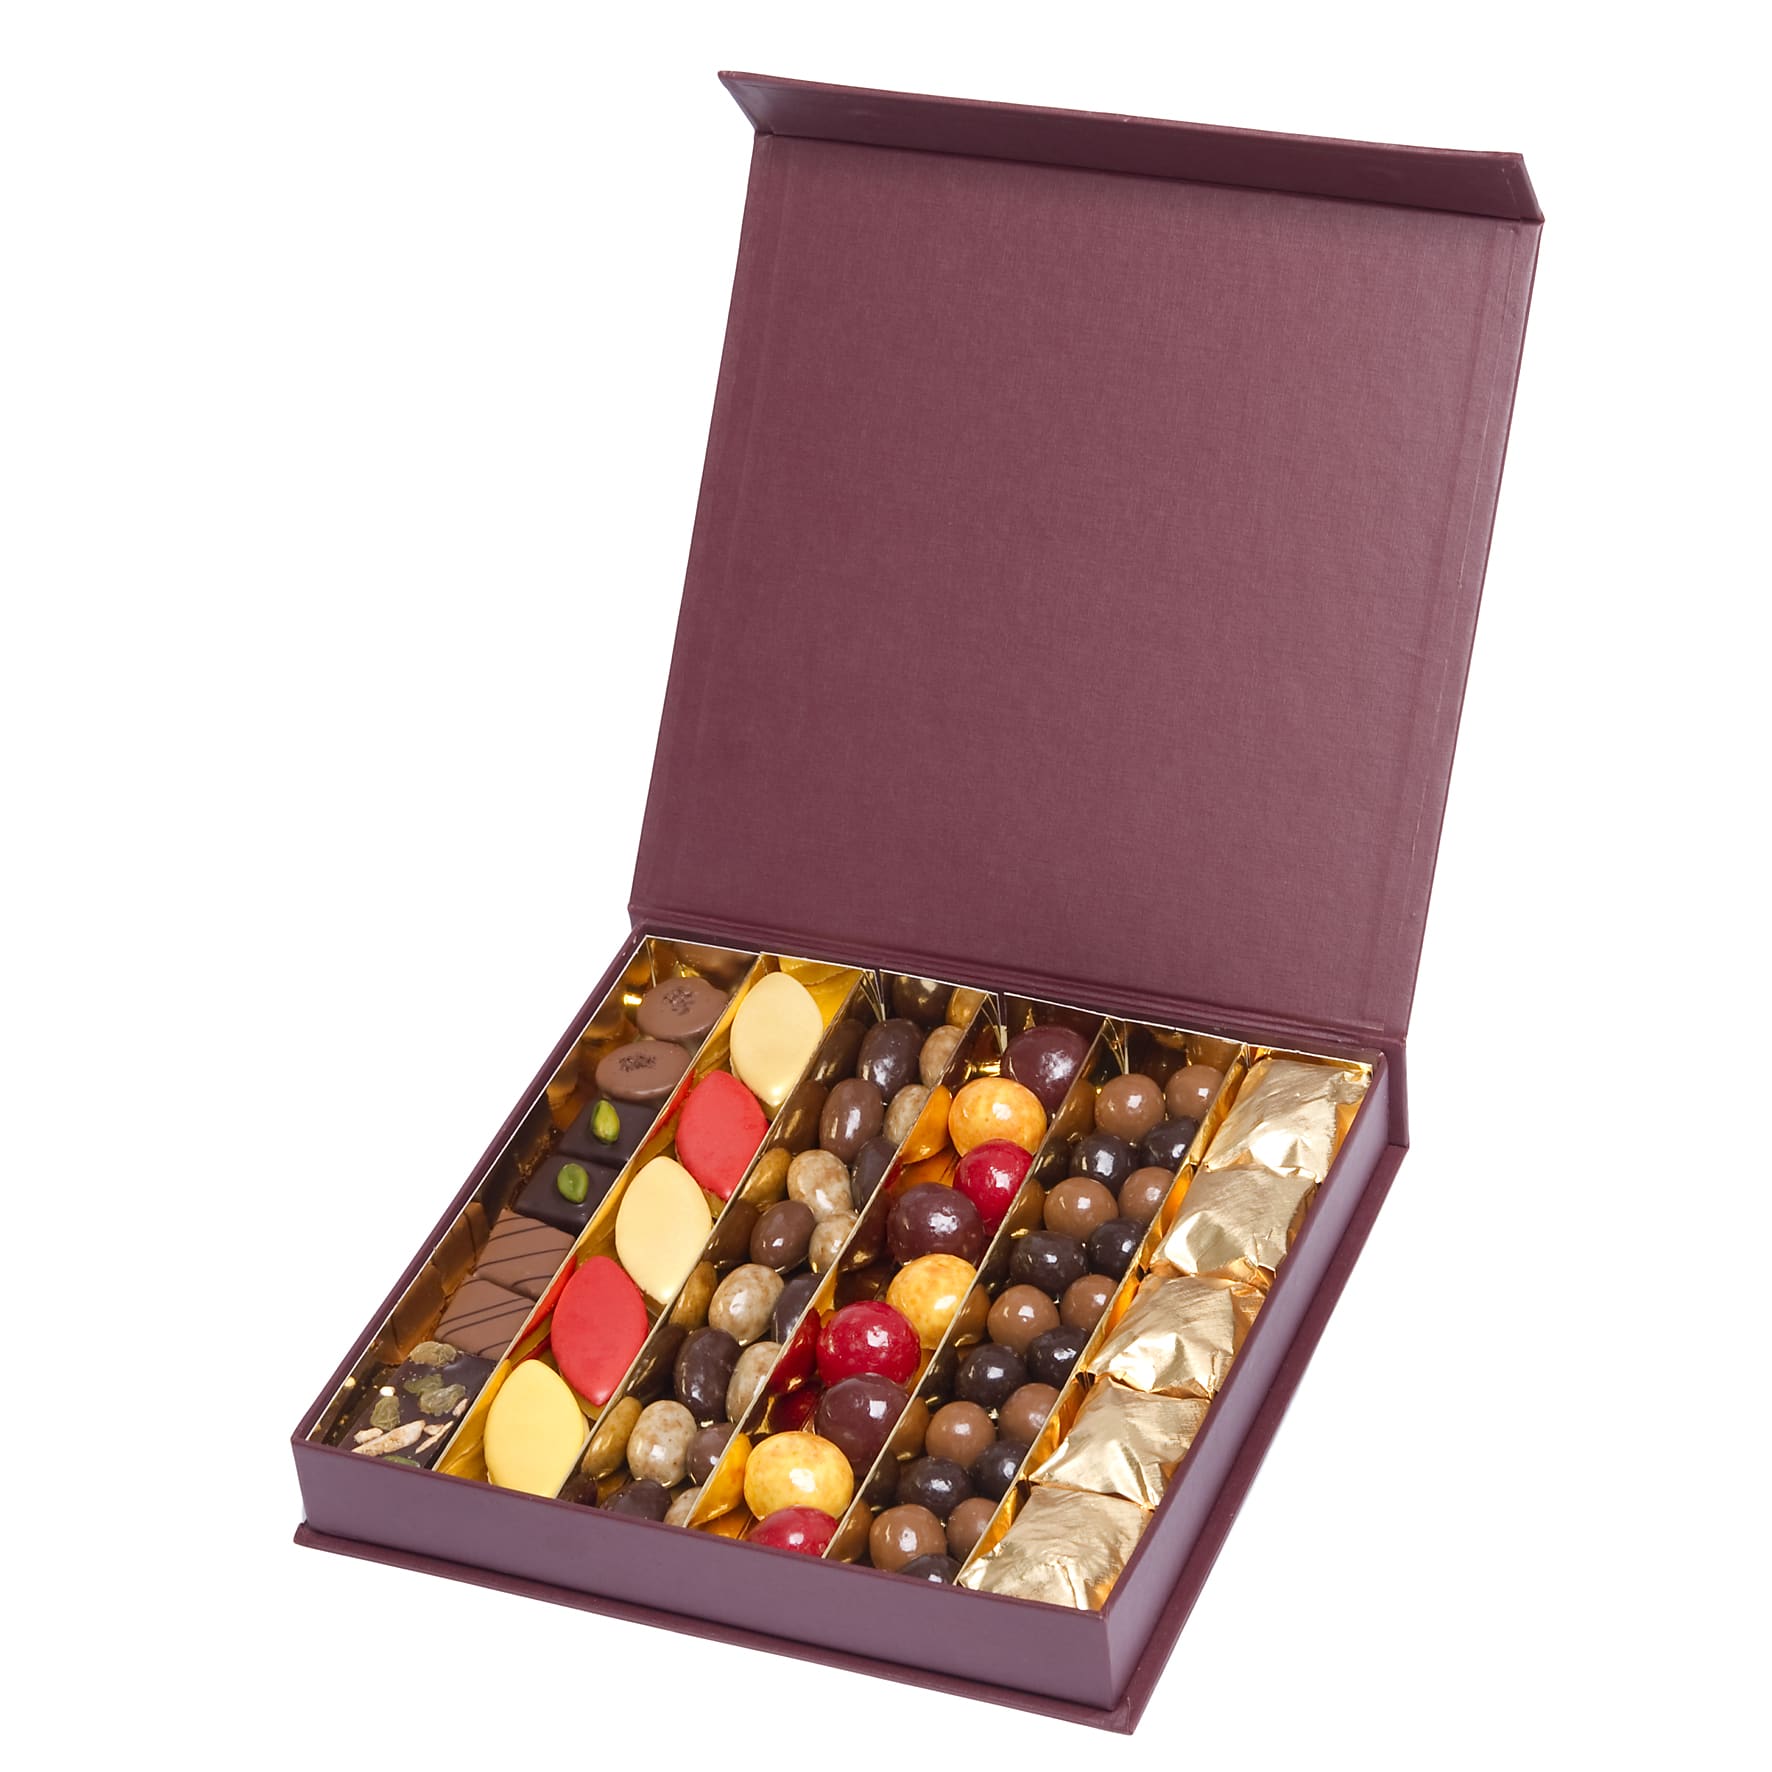 Cadeau chocolats de Noël - Boutique chocolats de noel D'lys couleurs